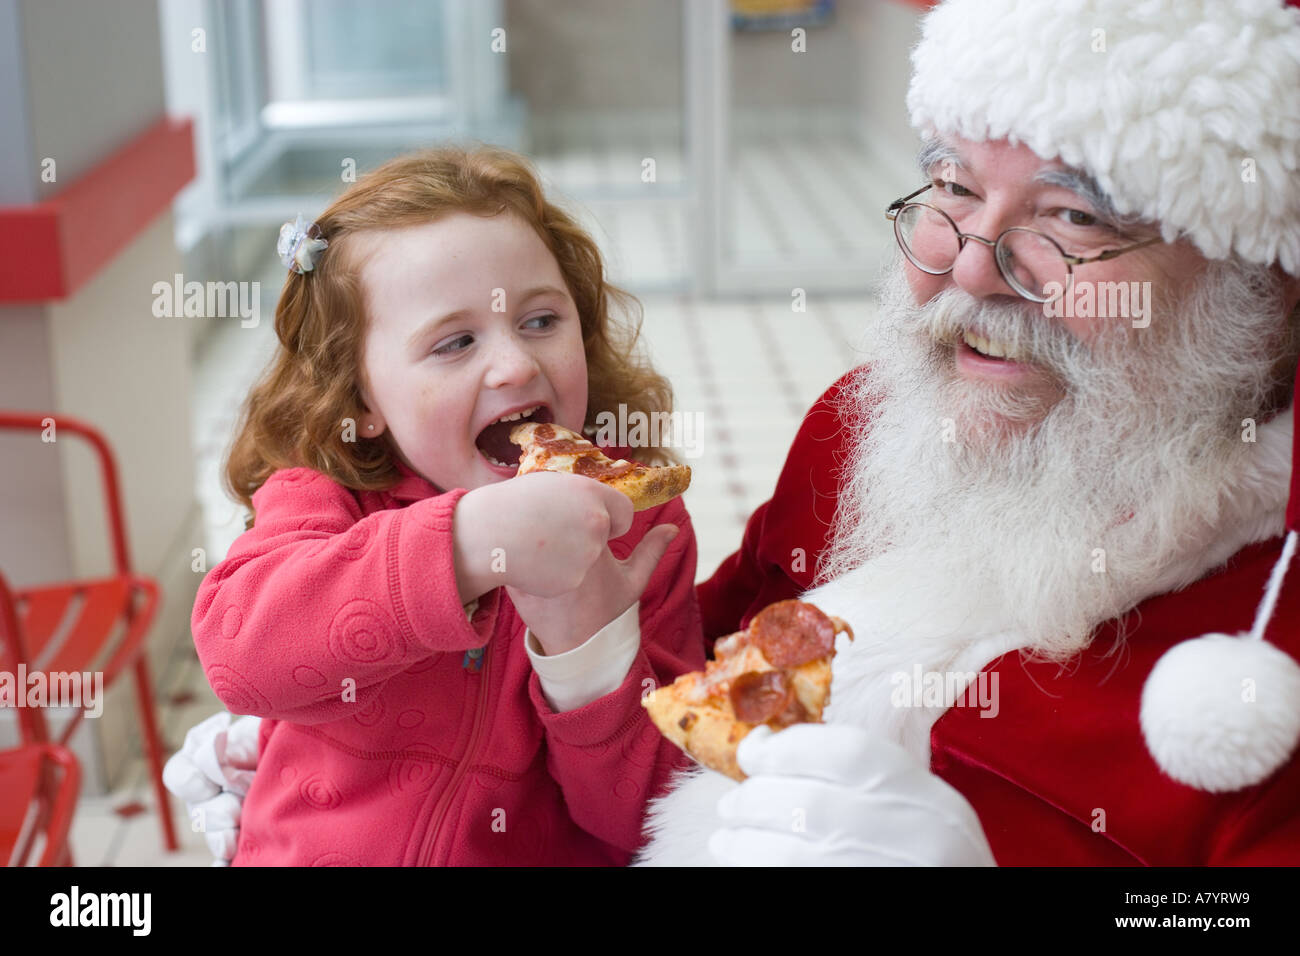 Babbo Natale Pizzeria.Babbo Natale Mangia La Pizza Con Bambina Foto Stock Alamy